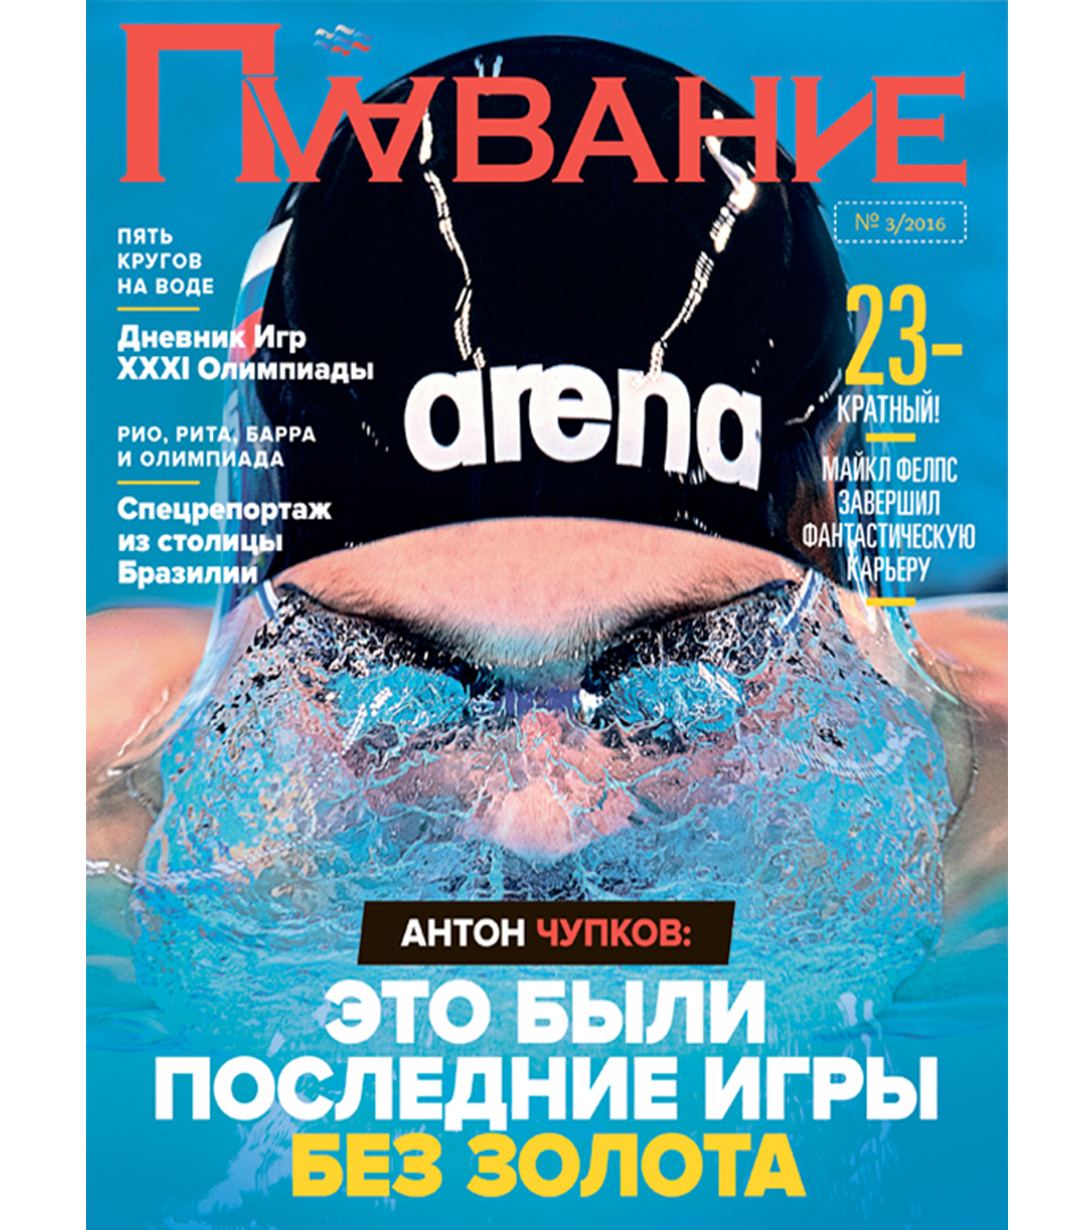 Журнал "Плавание" Выпуск №3 осень 2016